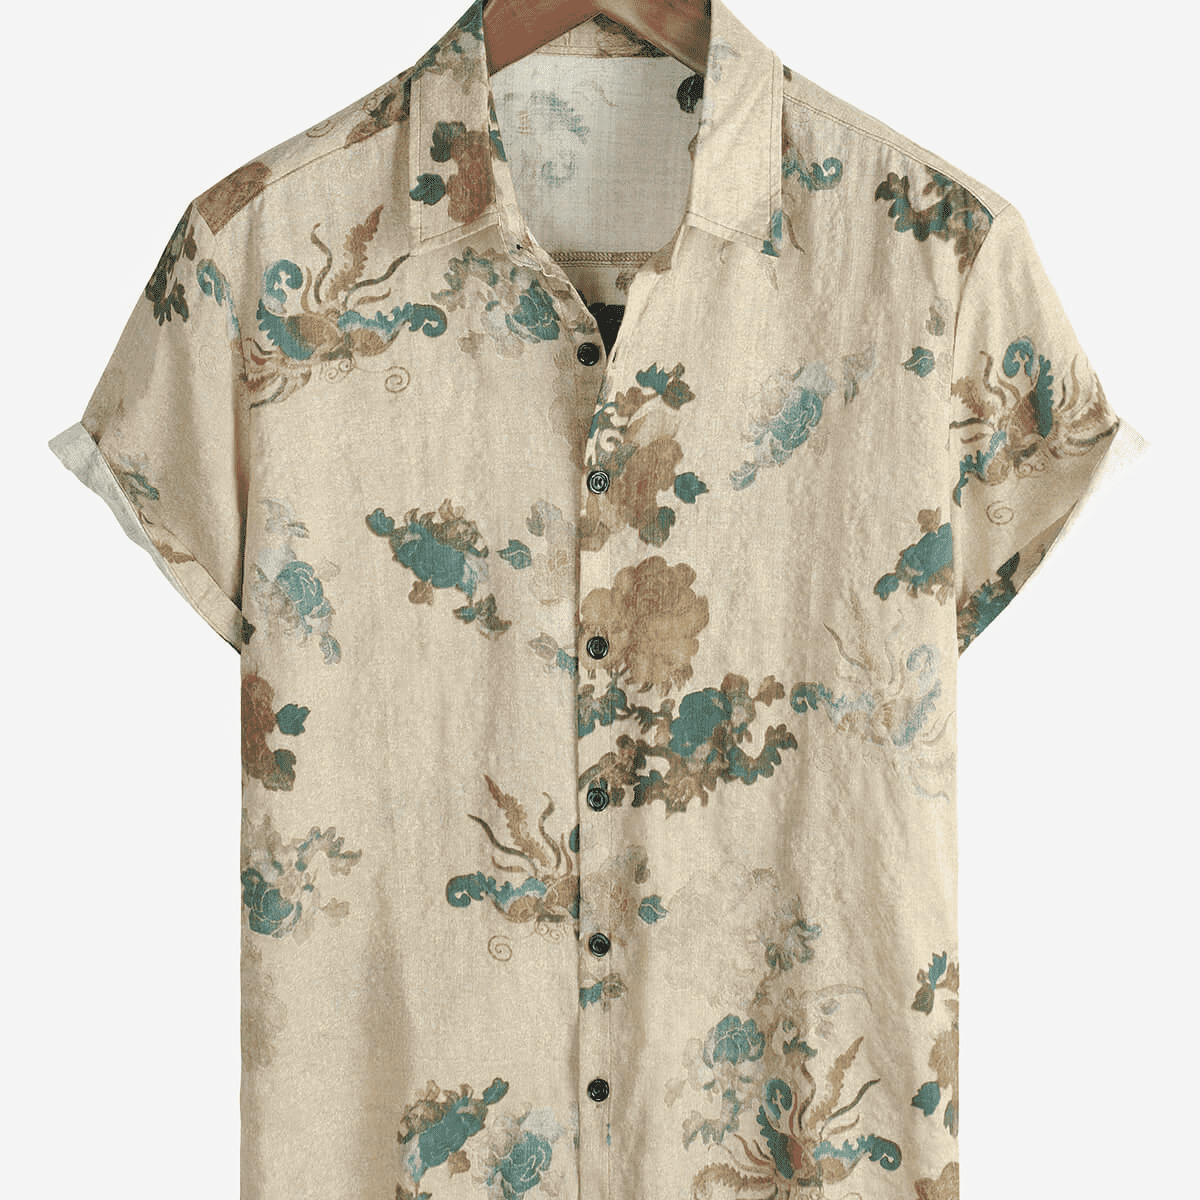 Men's Khaki Floral Vintage Short Sleeve Retro Summer Cotton Button Up Shirt